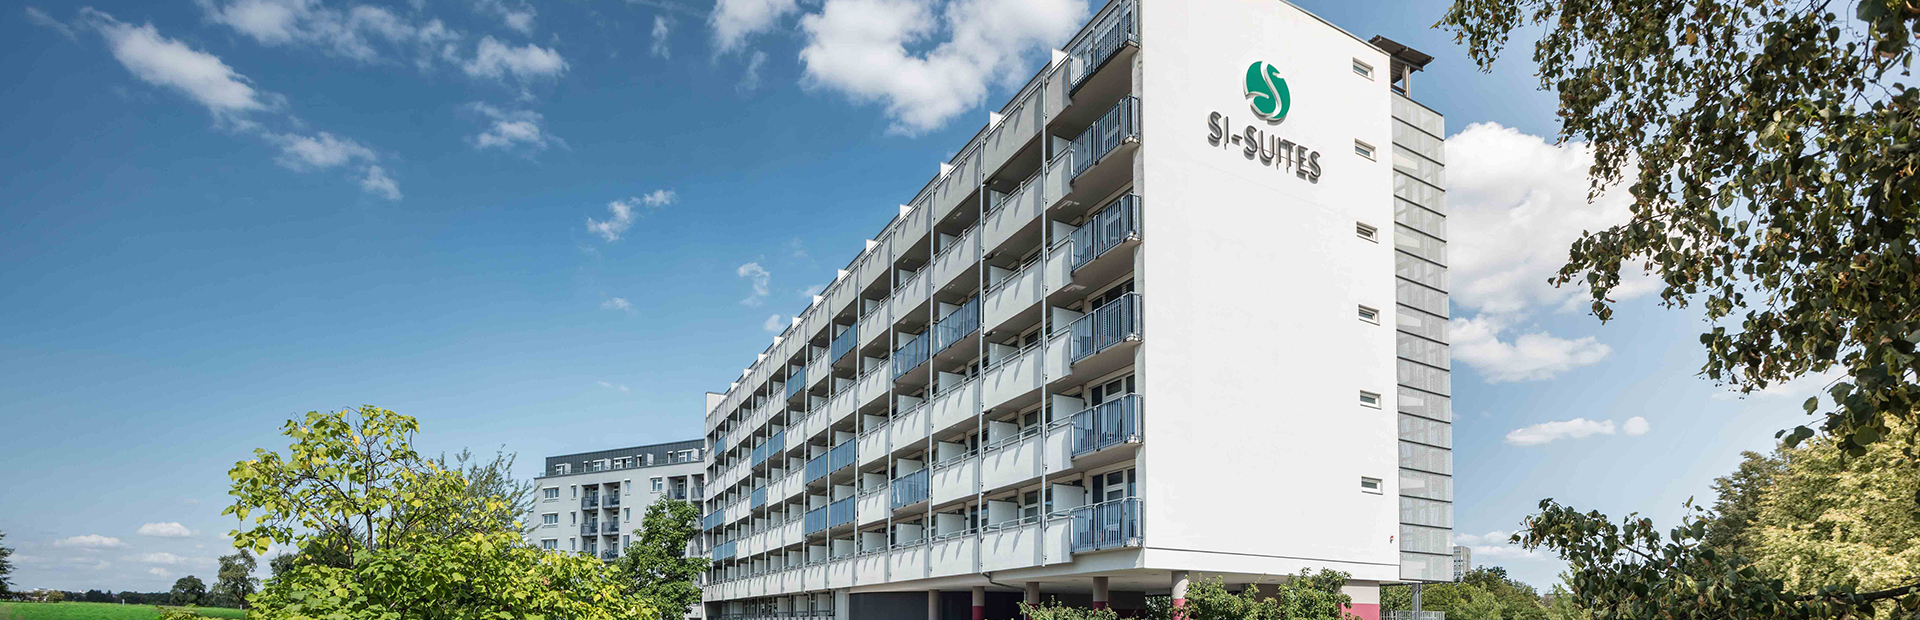 Blick auf die Terrasse des SI-SUITES Hotels in Stuttgart